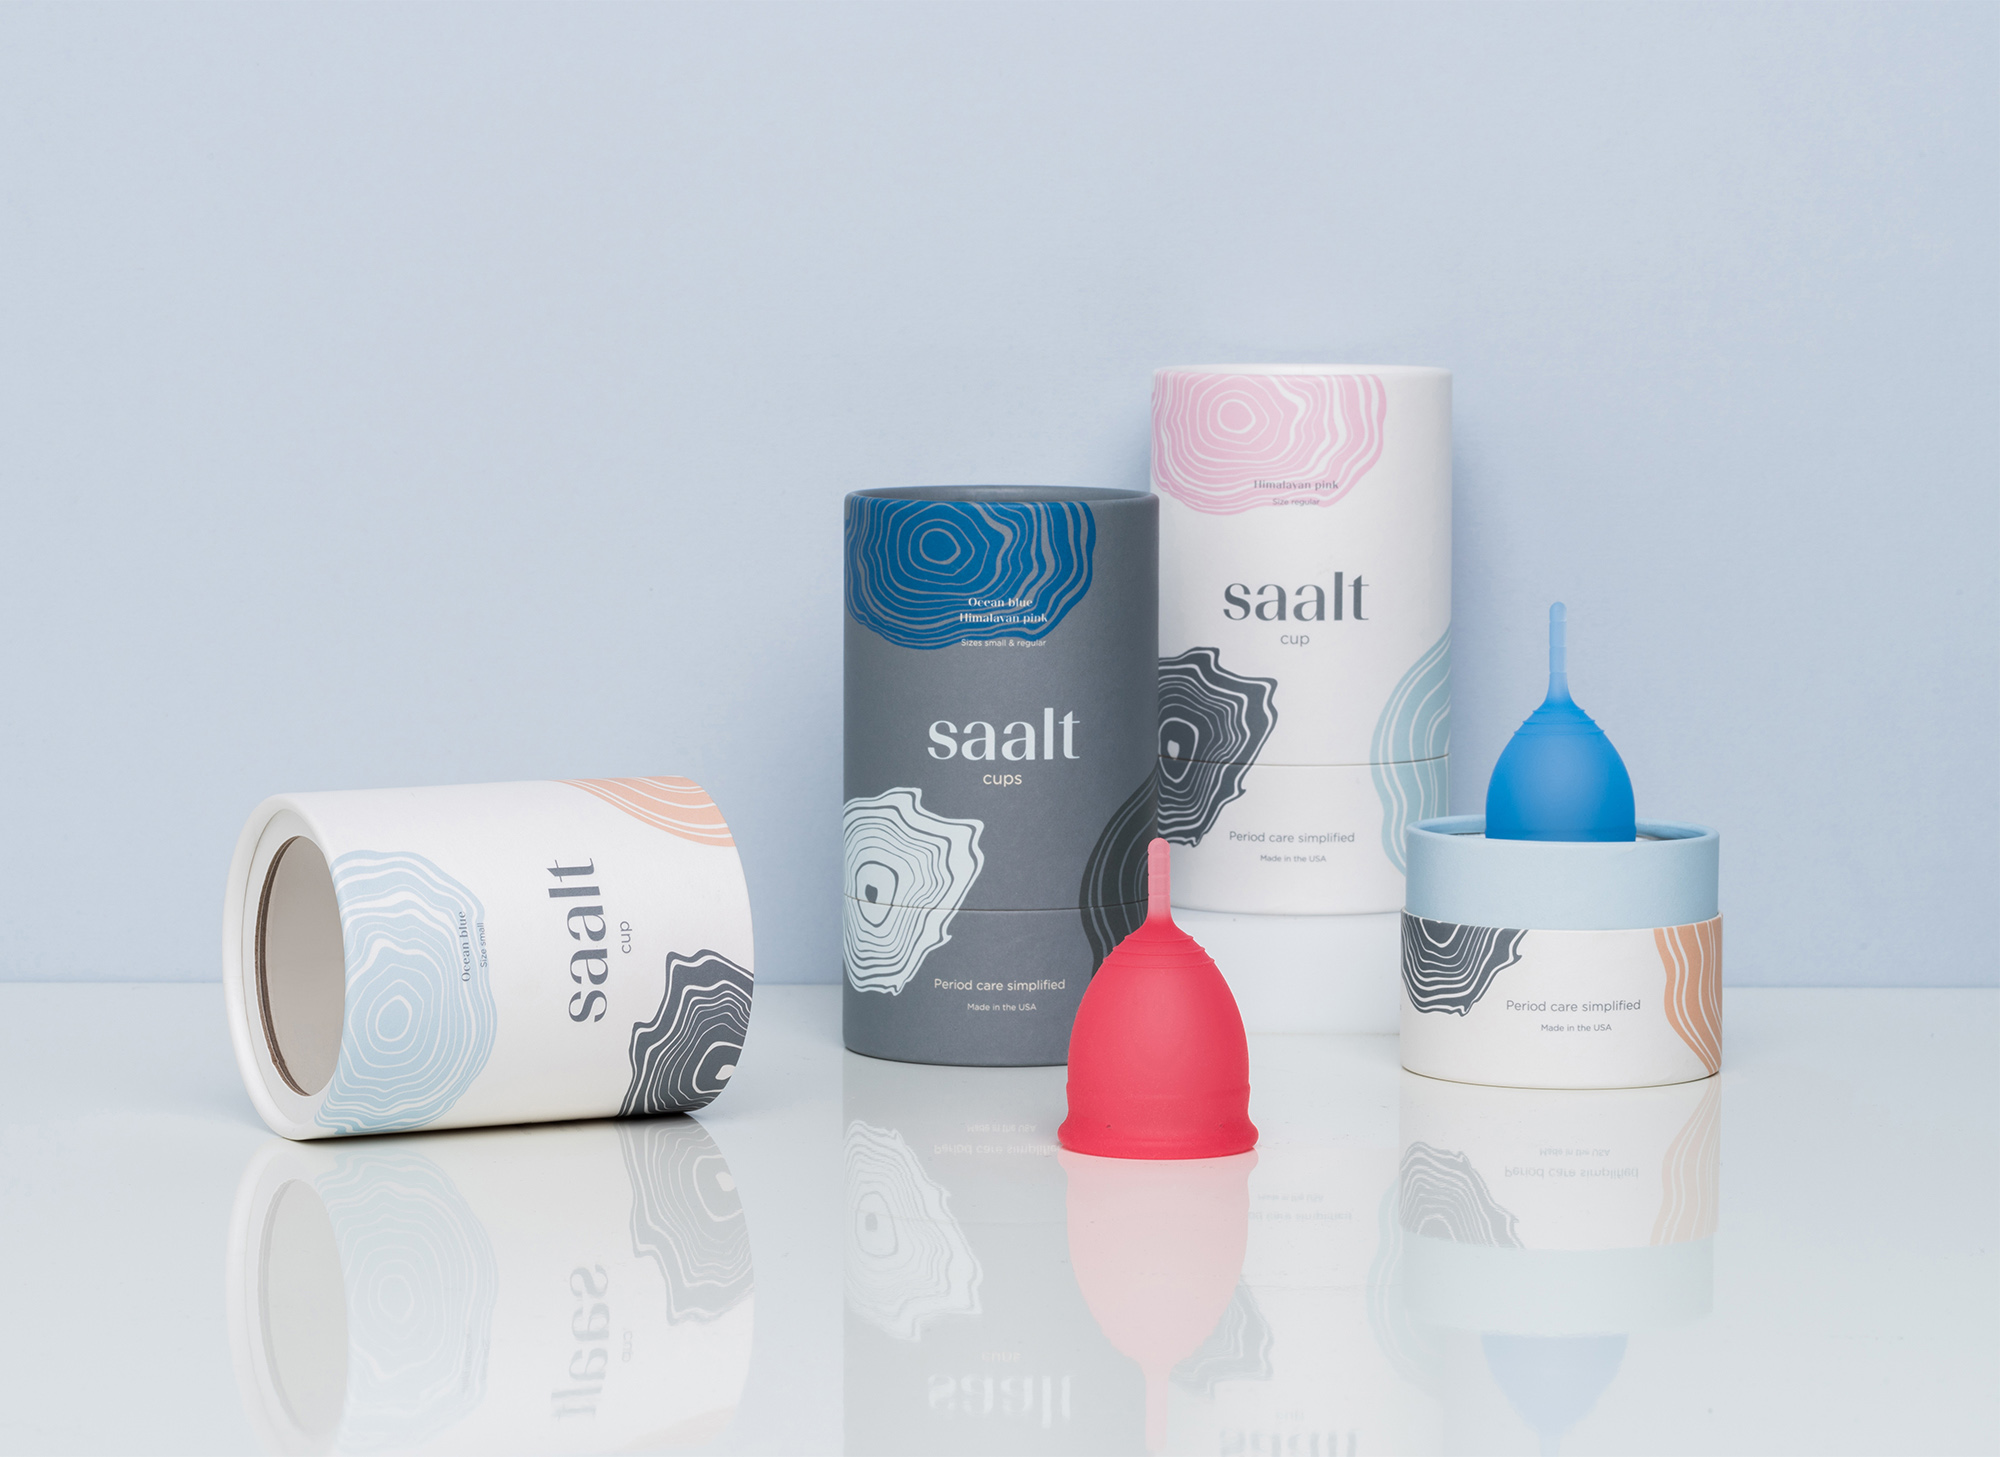 Saalt tube packaging and menstrual cups